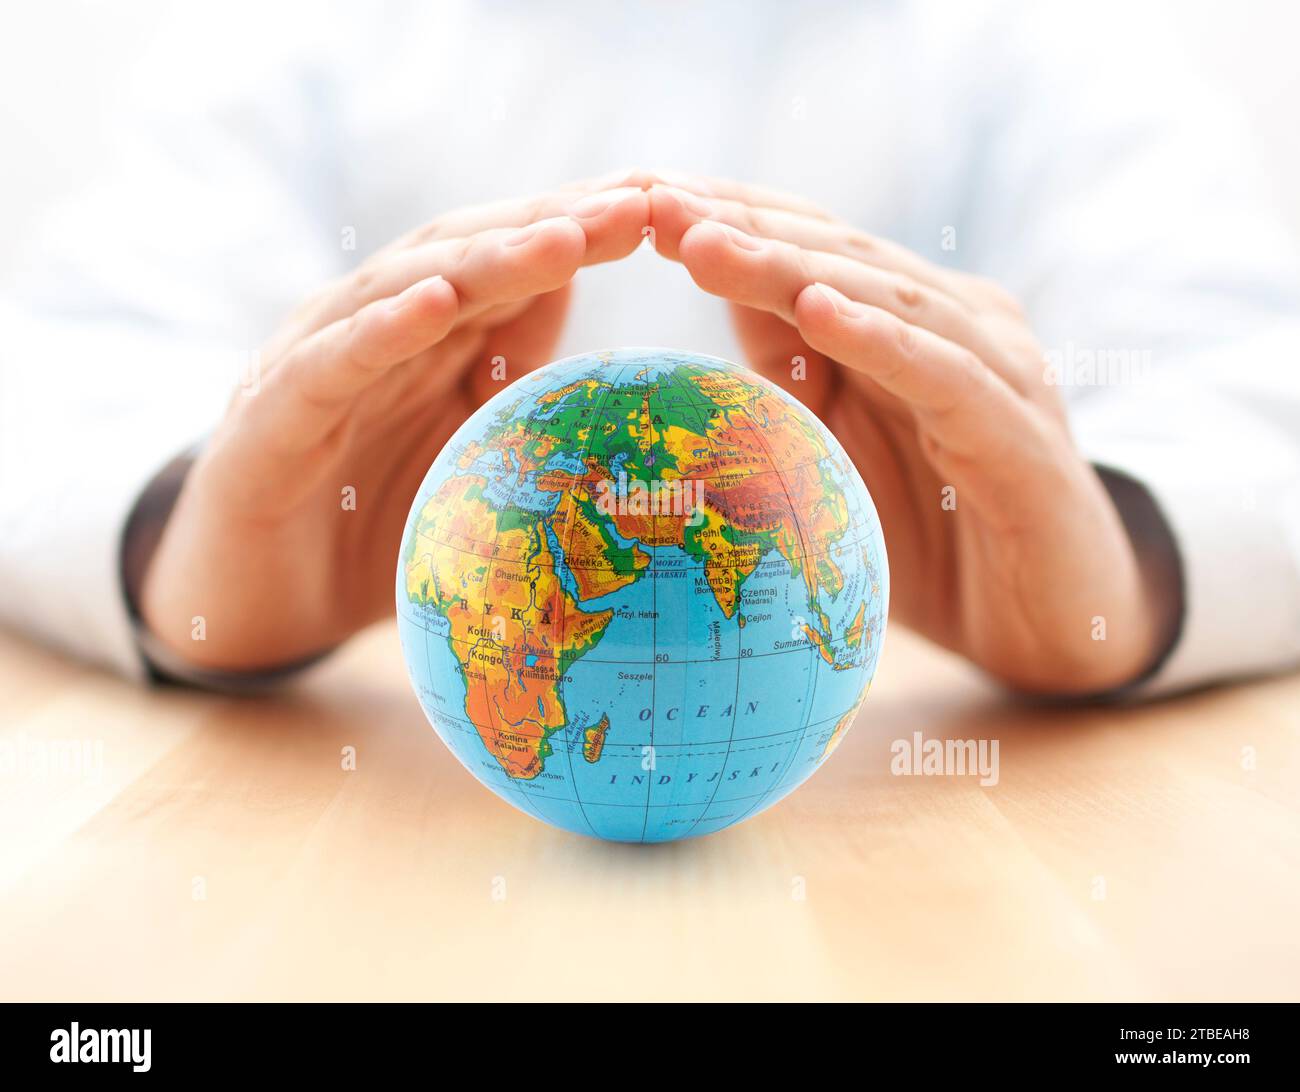 Planet Erde Globus geschützt durch Hände. Stockfoto